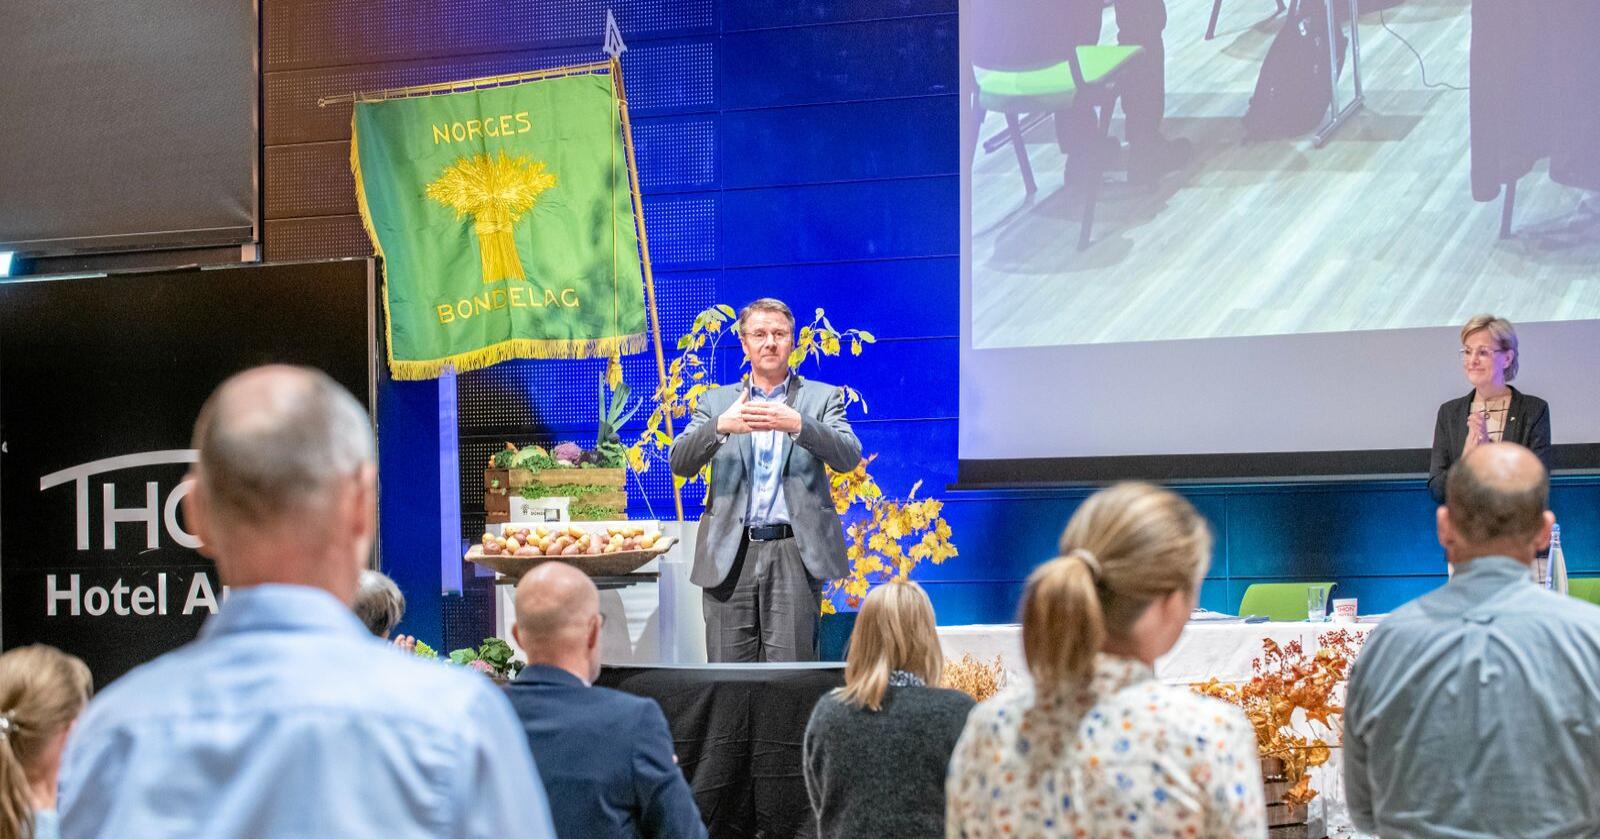 Gjenvalgt: Lars Petter Bartnes ble gjenvalgt som leder i Norges Bondelag. Foto: Vidar Sandnes